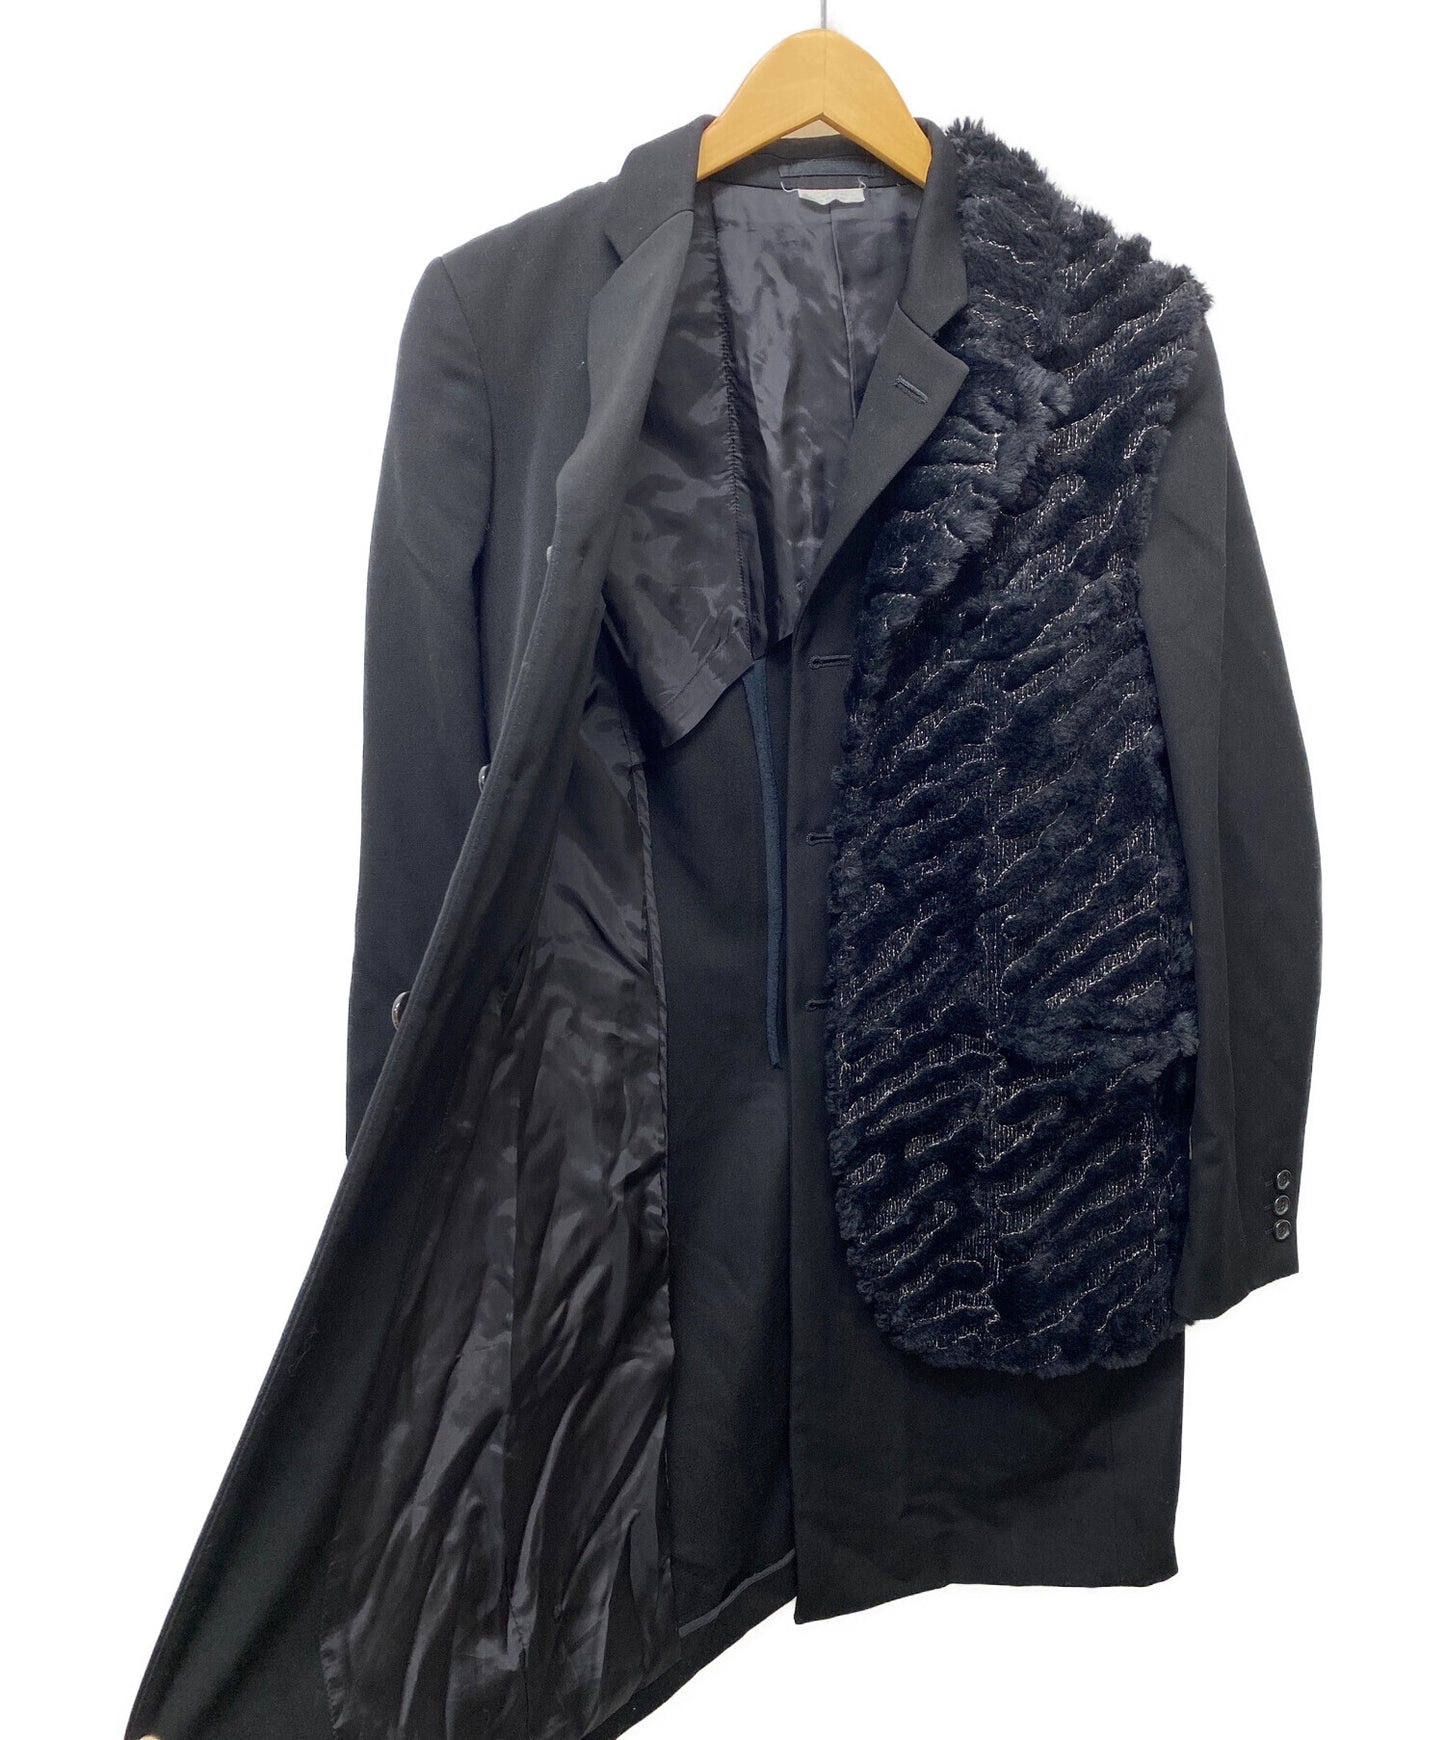 Comme des Garcons Homme Plus Vest 도킹 재킷 PD-J033